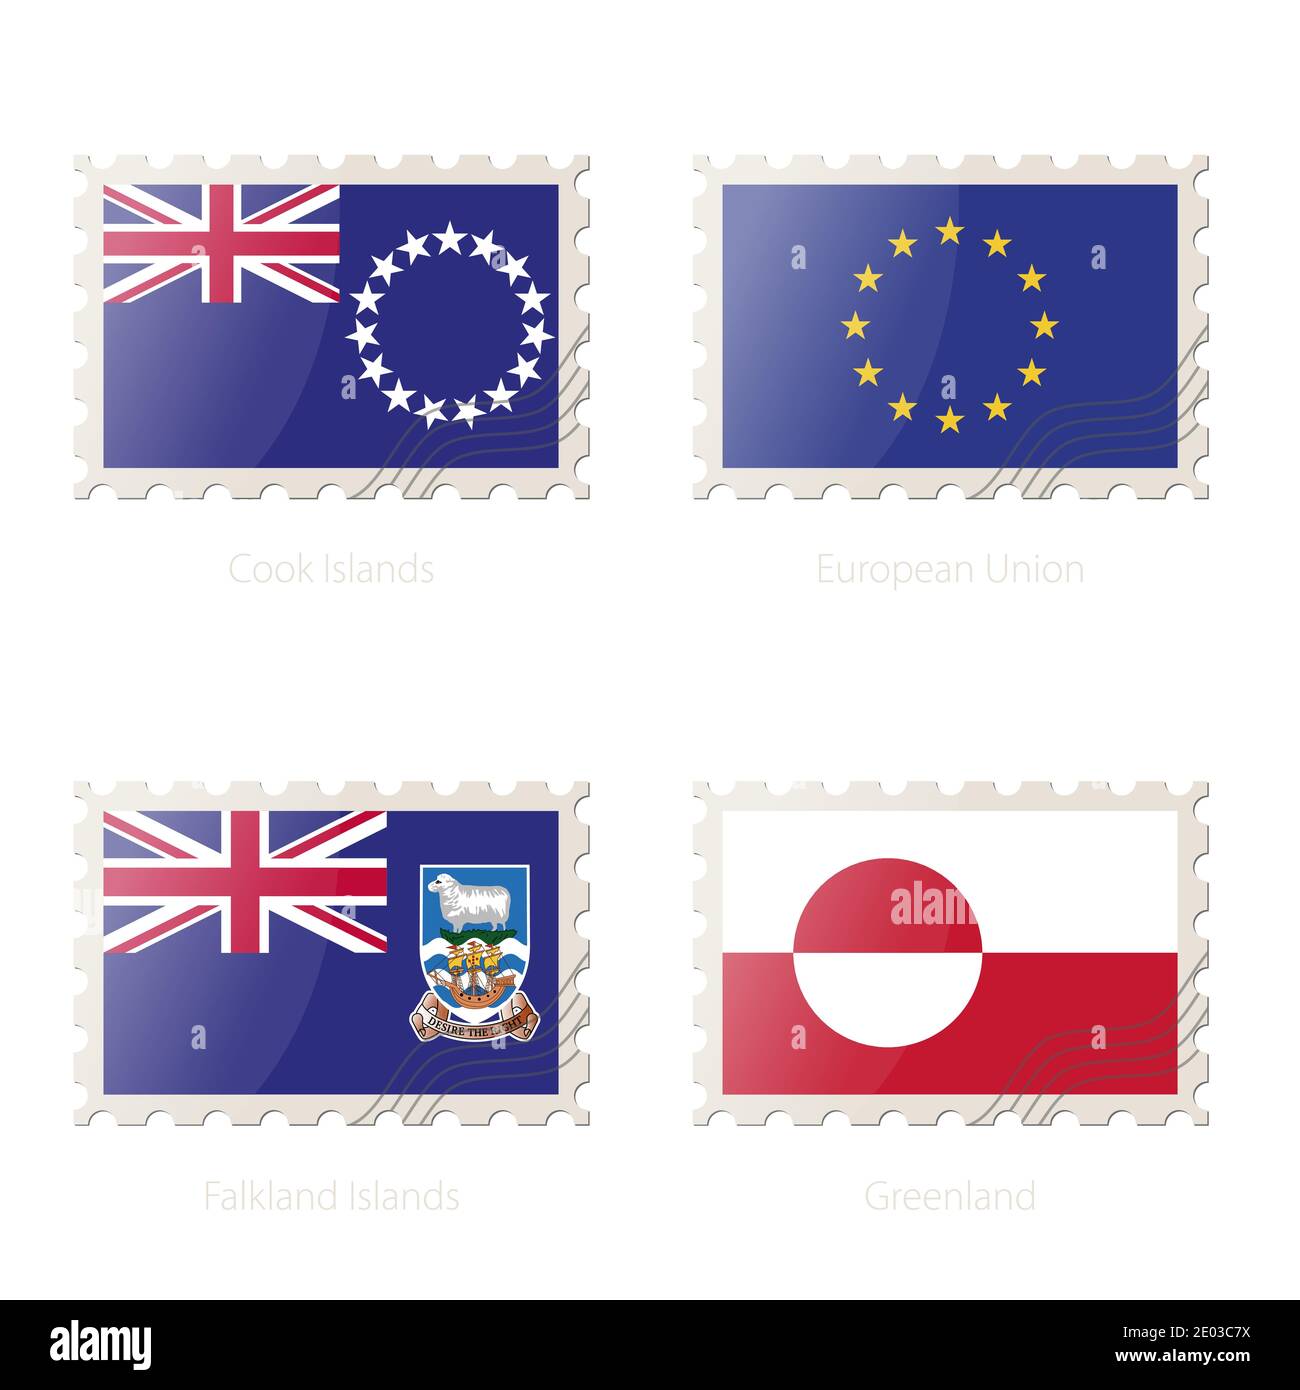 Francobollo con l'immagine di Isole Cook, Unione europea, Isole Falkland, bandiera della Groenlandia. Illustrazione vettoriale. Illustrazione Vettoriale